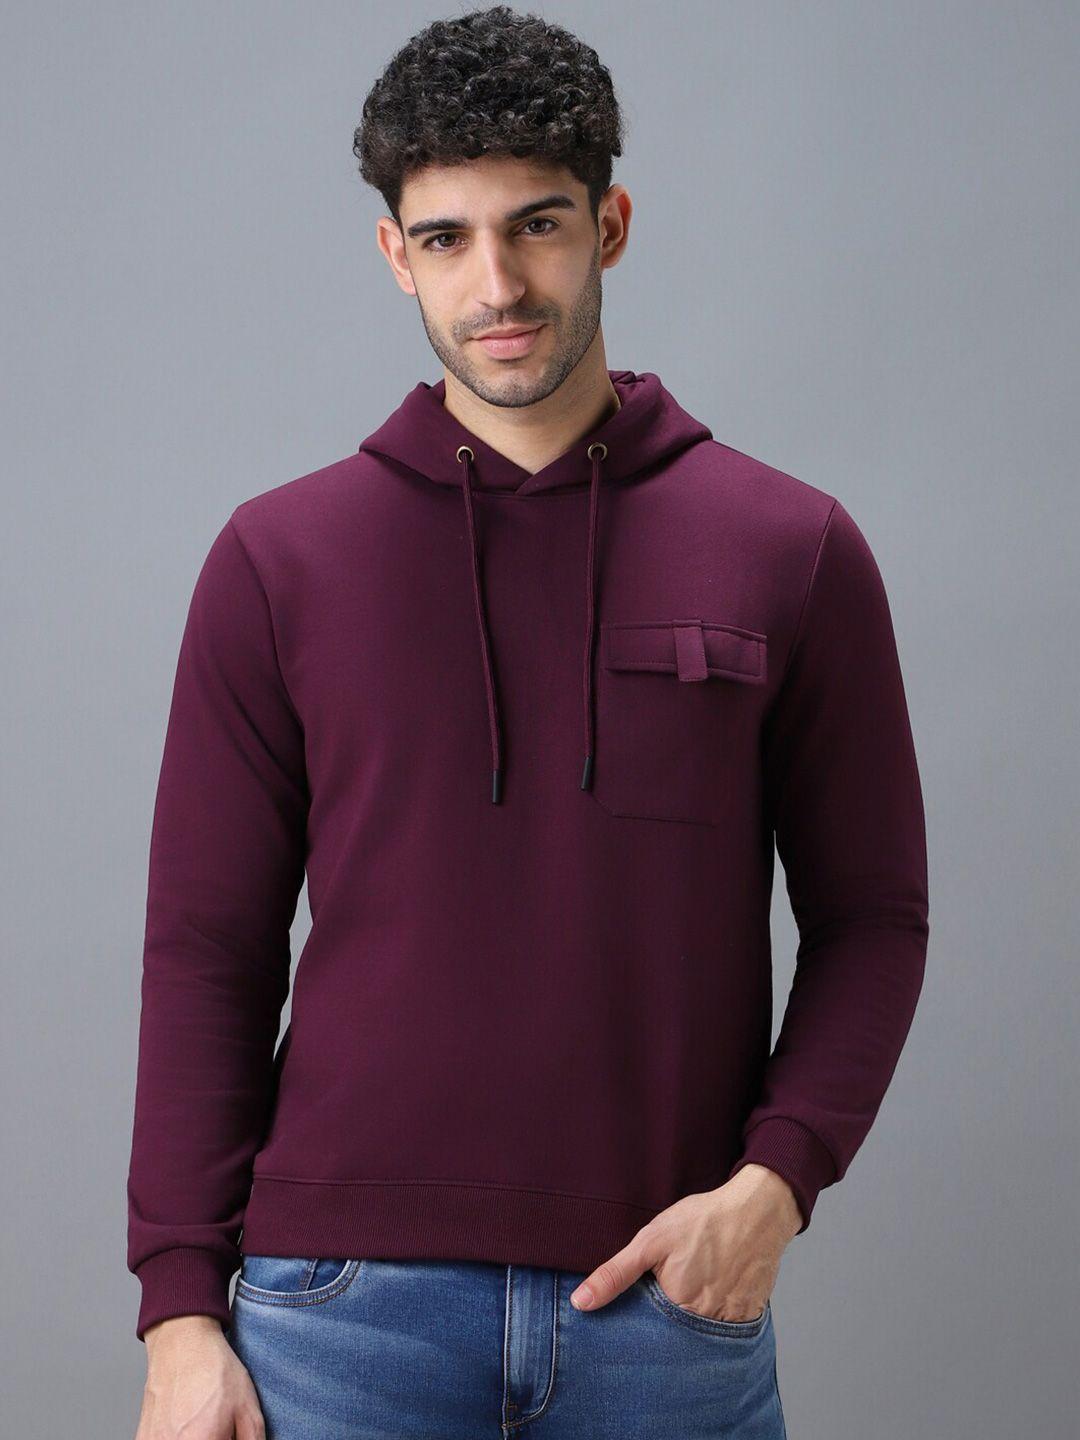 urbano fashion hooded pullover sweatshirt